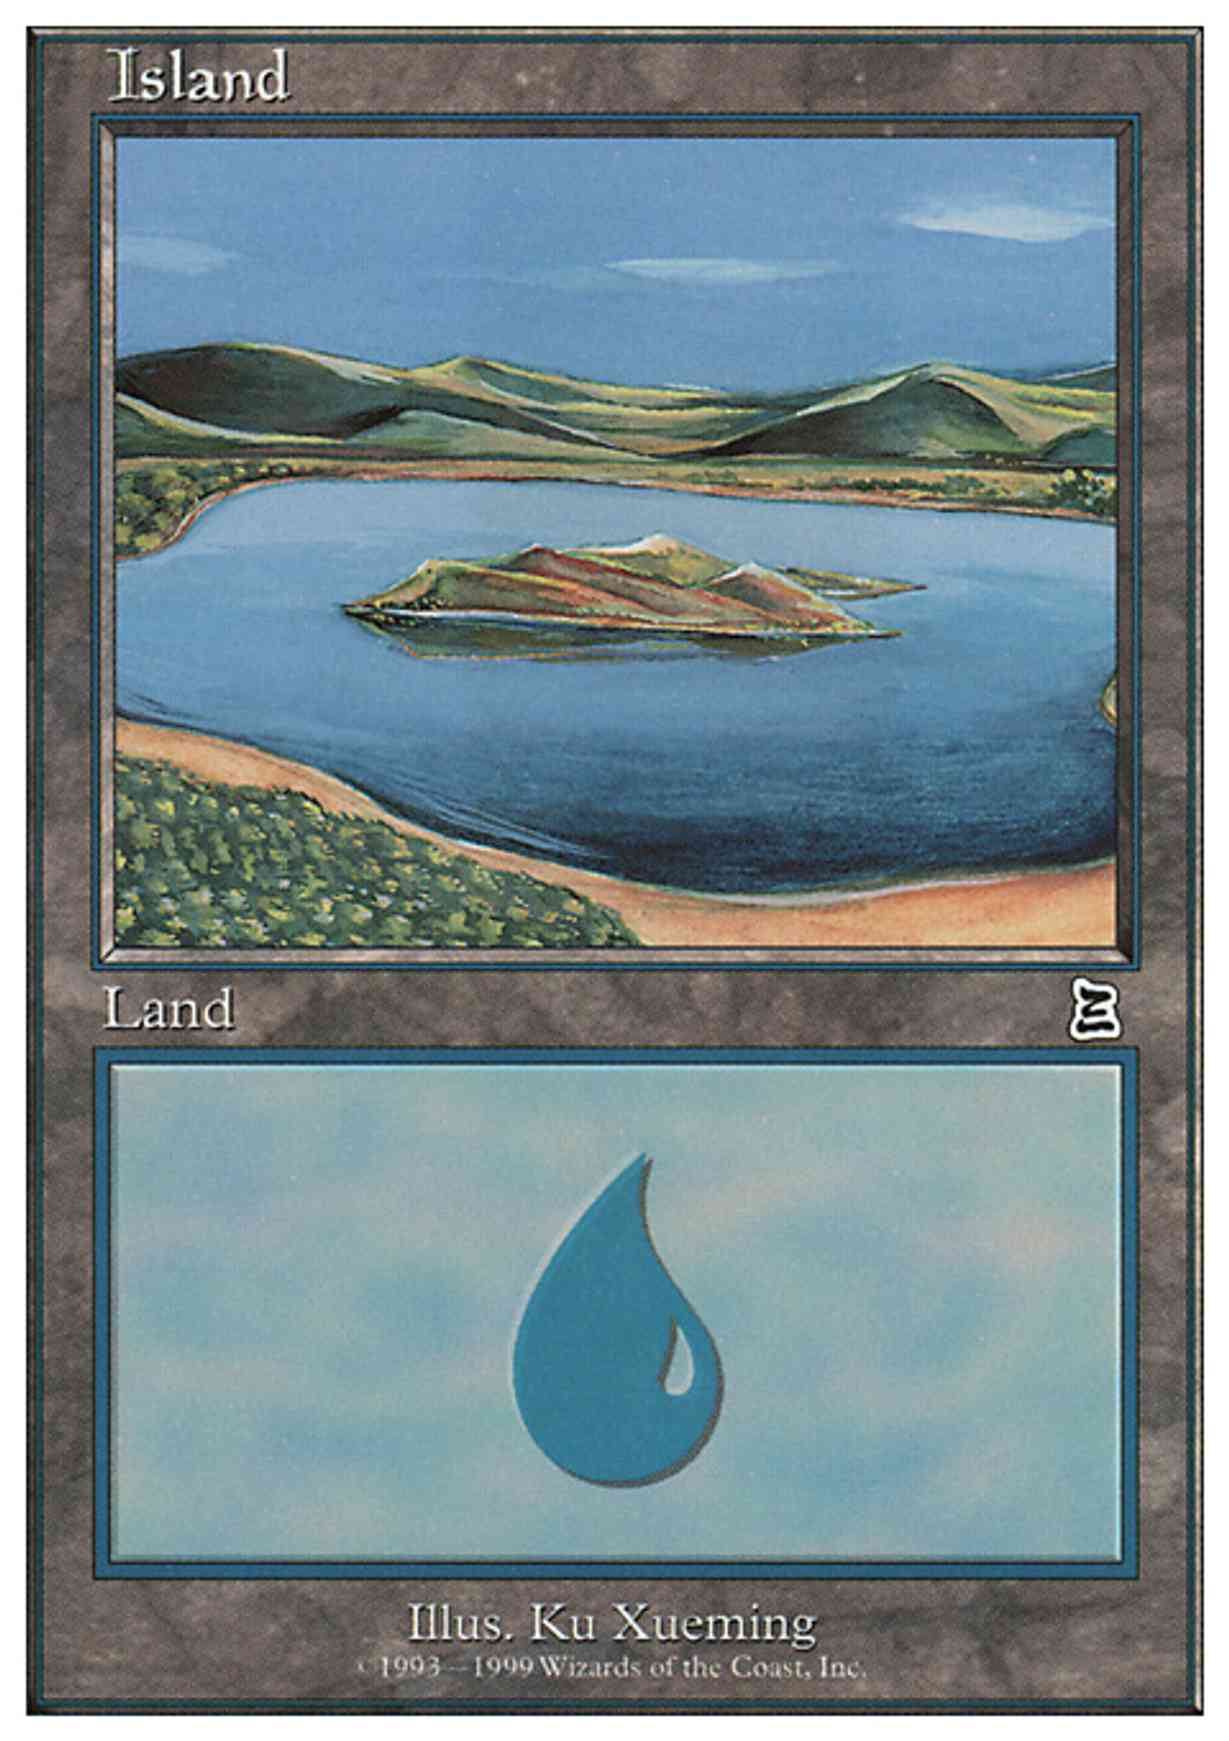 Island (Beach) magic card front